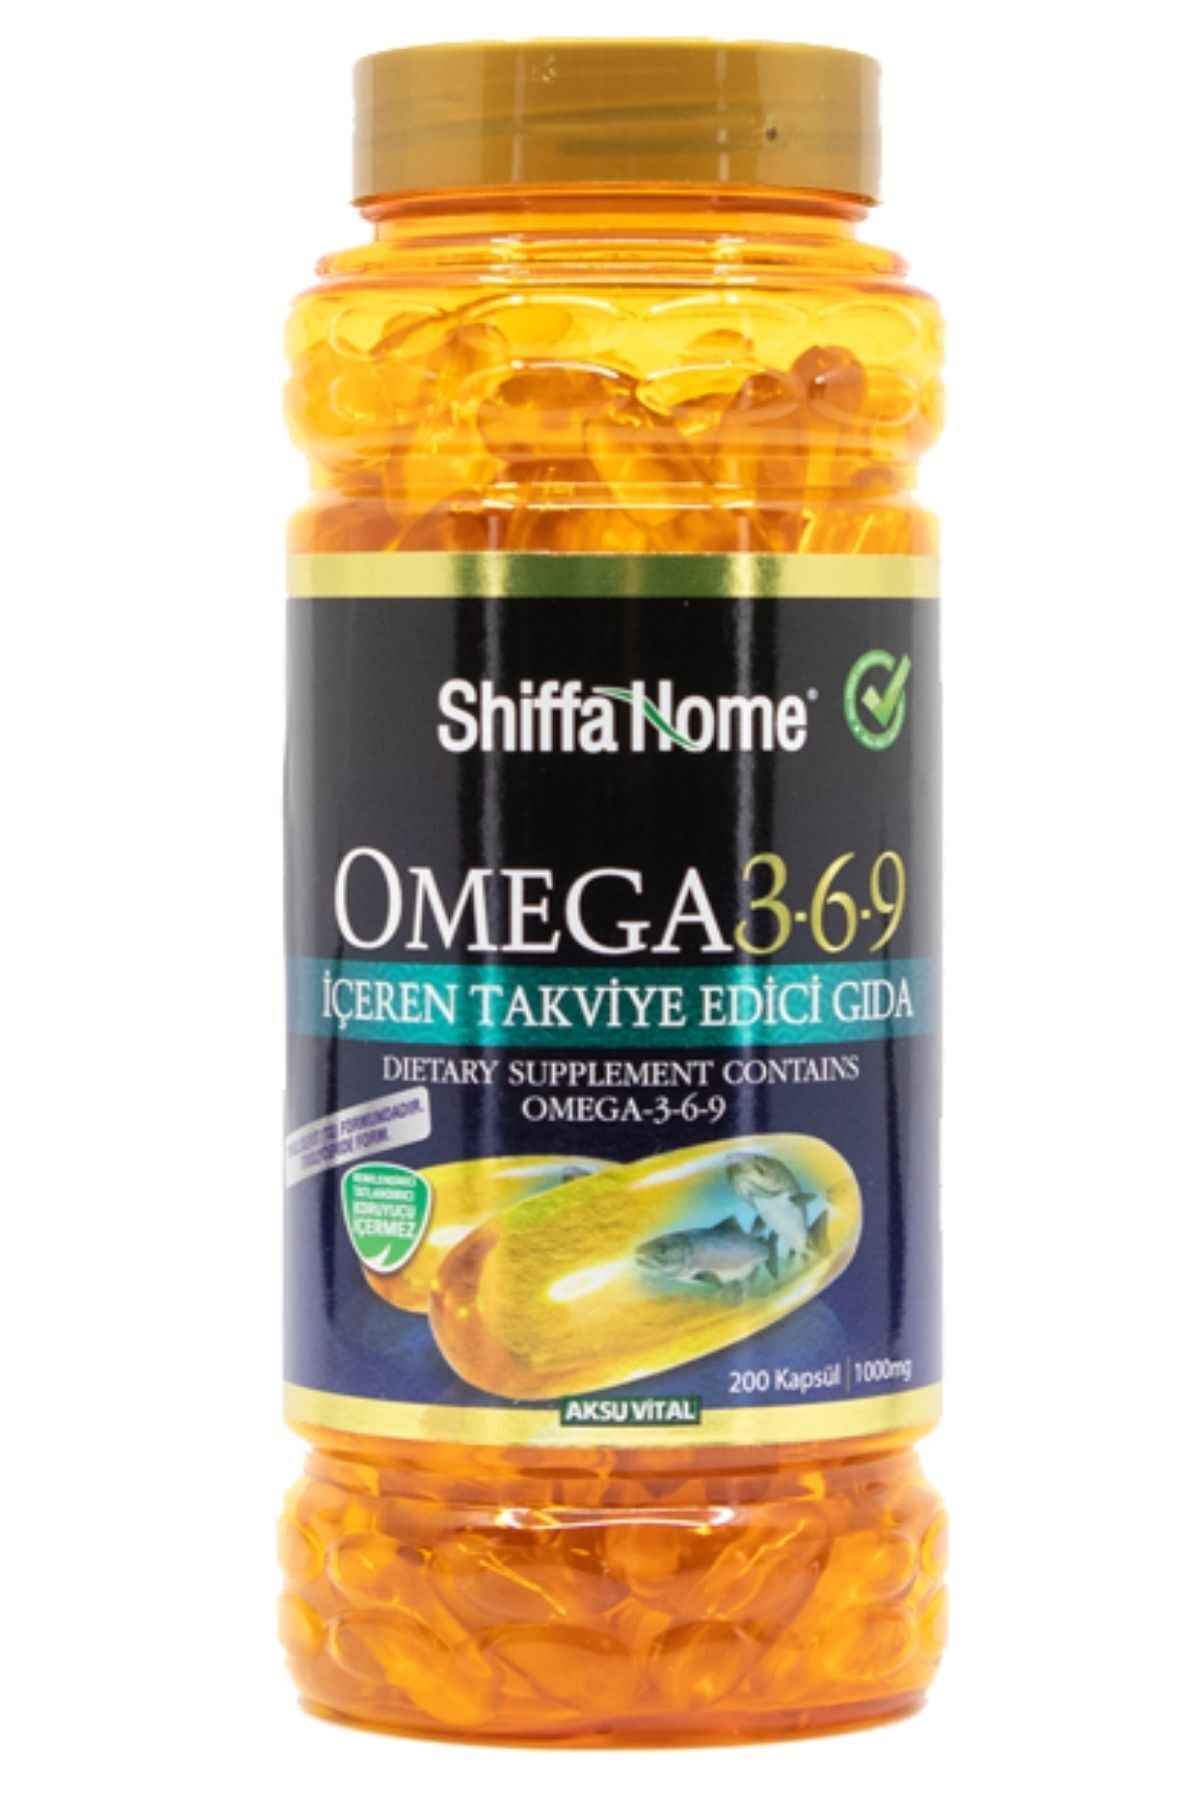 Shiffa Home Omega 3 6 9 1000mg 200 Kapsül